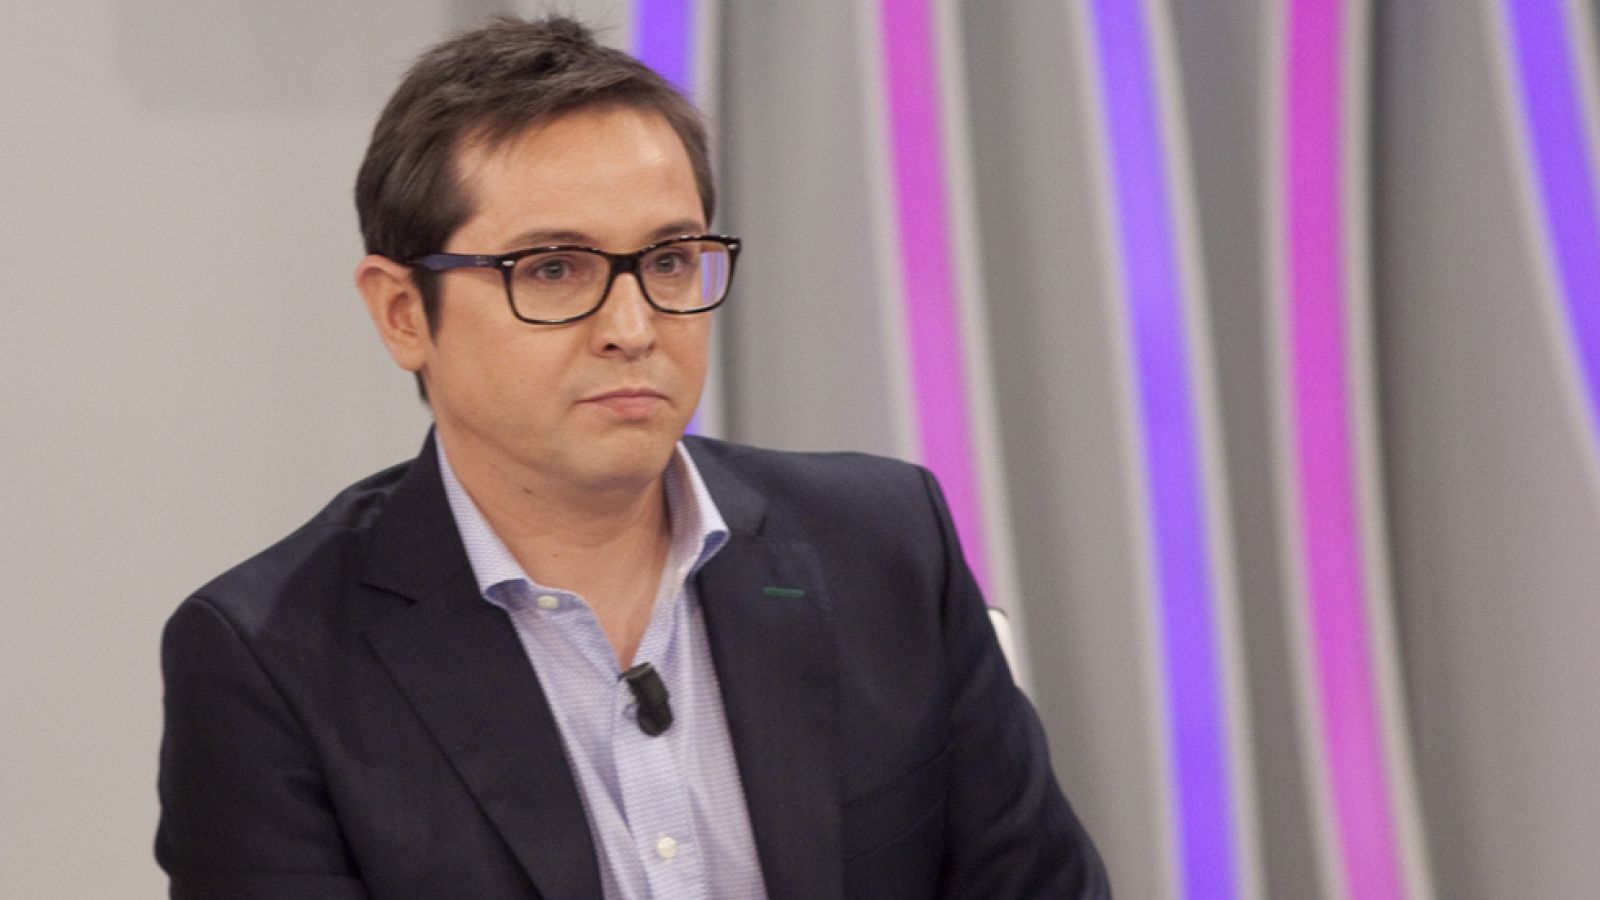 Sergio Martín, director del Canal 24 Horas: La entrevista a Pablo Iglesias "fue un momento duro"